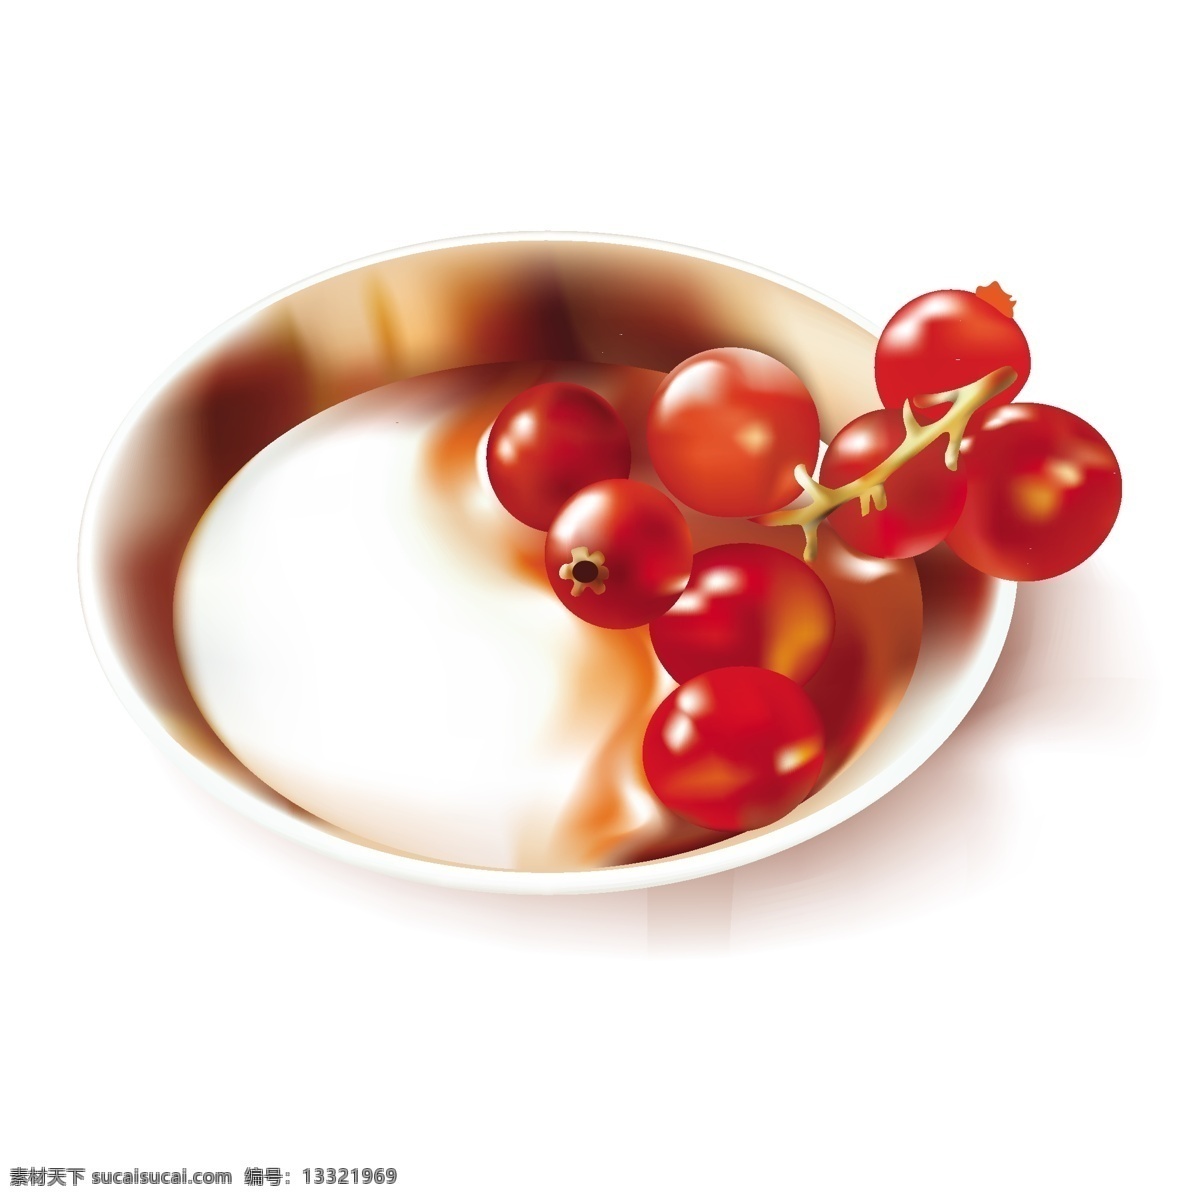 生物世界 矢量水果 矢量素材 水果 水果素材 西红柿 陶瓷 容器 新鲜 蔬菜 矢量 矢量陶瓷 陶瓷容器 不锈钢盆子 红提子